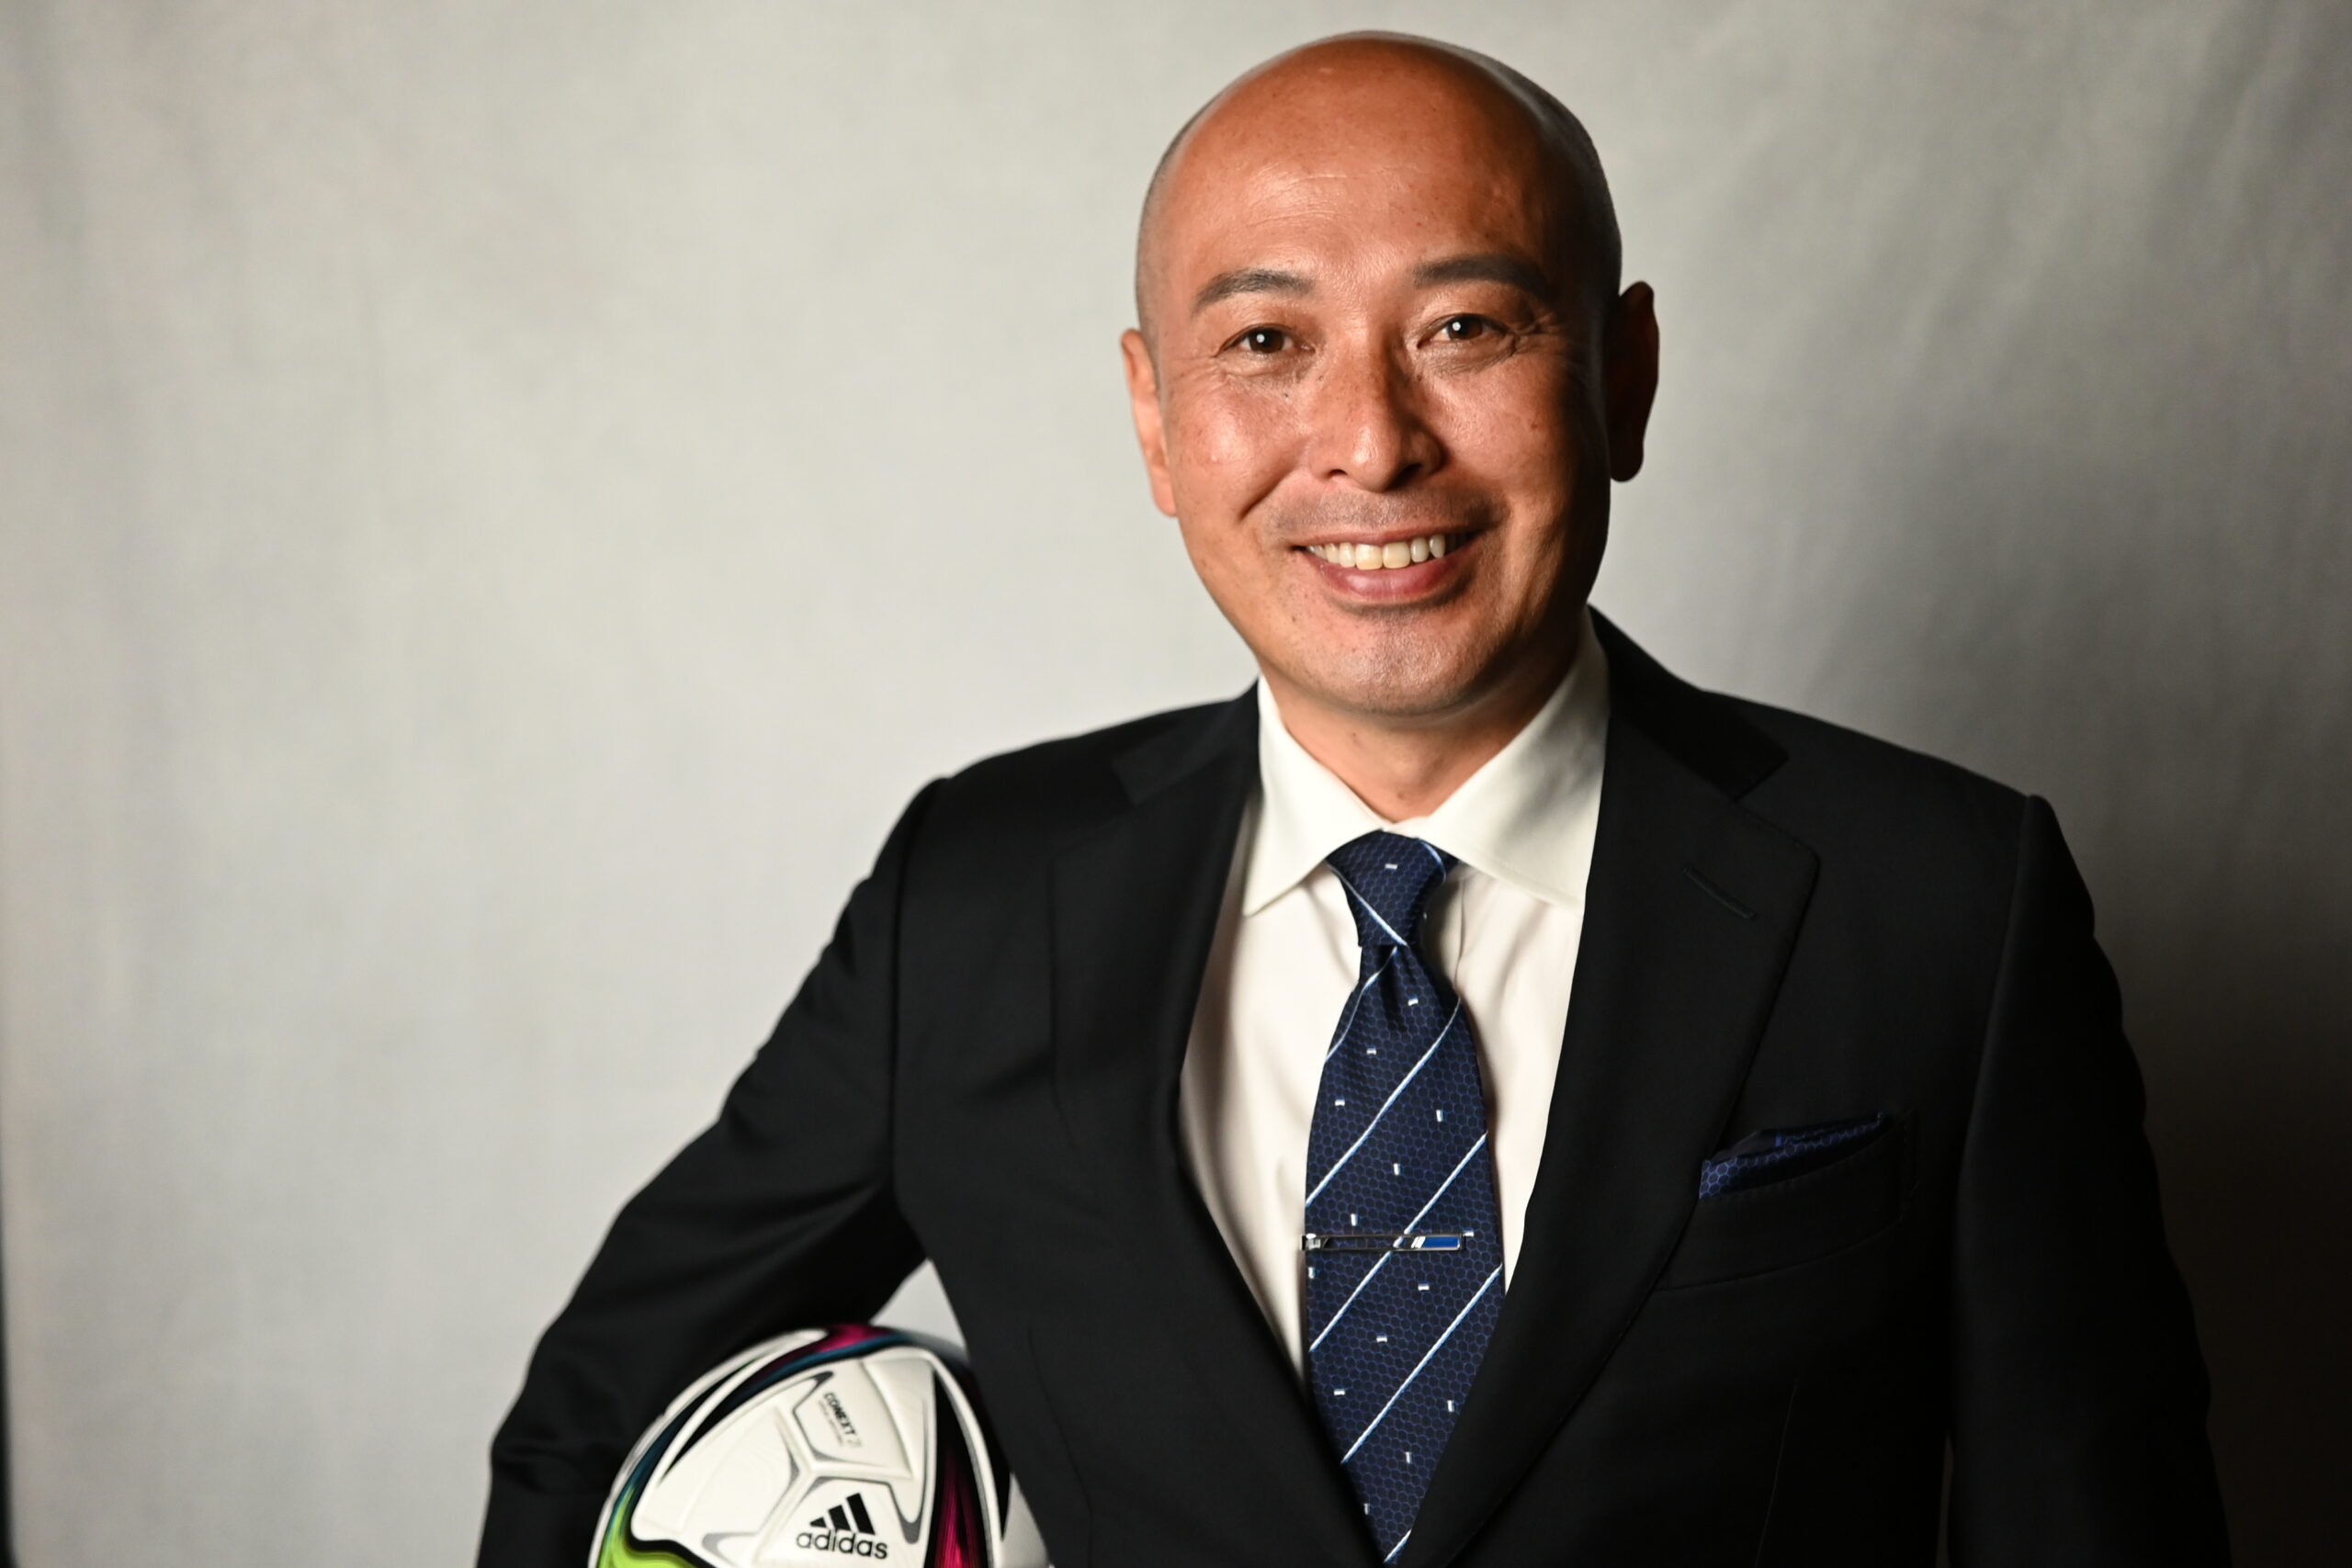 アトランタ五輪サッカー日本代表、サッカー指導者・解説者の松原良香氏がエグゼグティブアドバイザーに就任いたしました